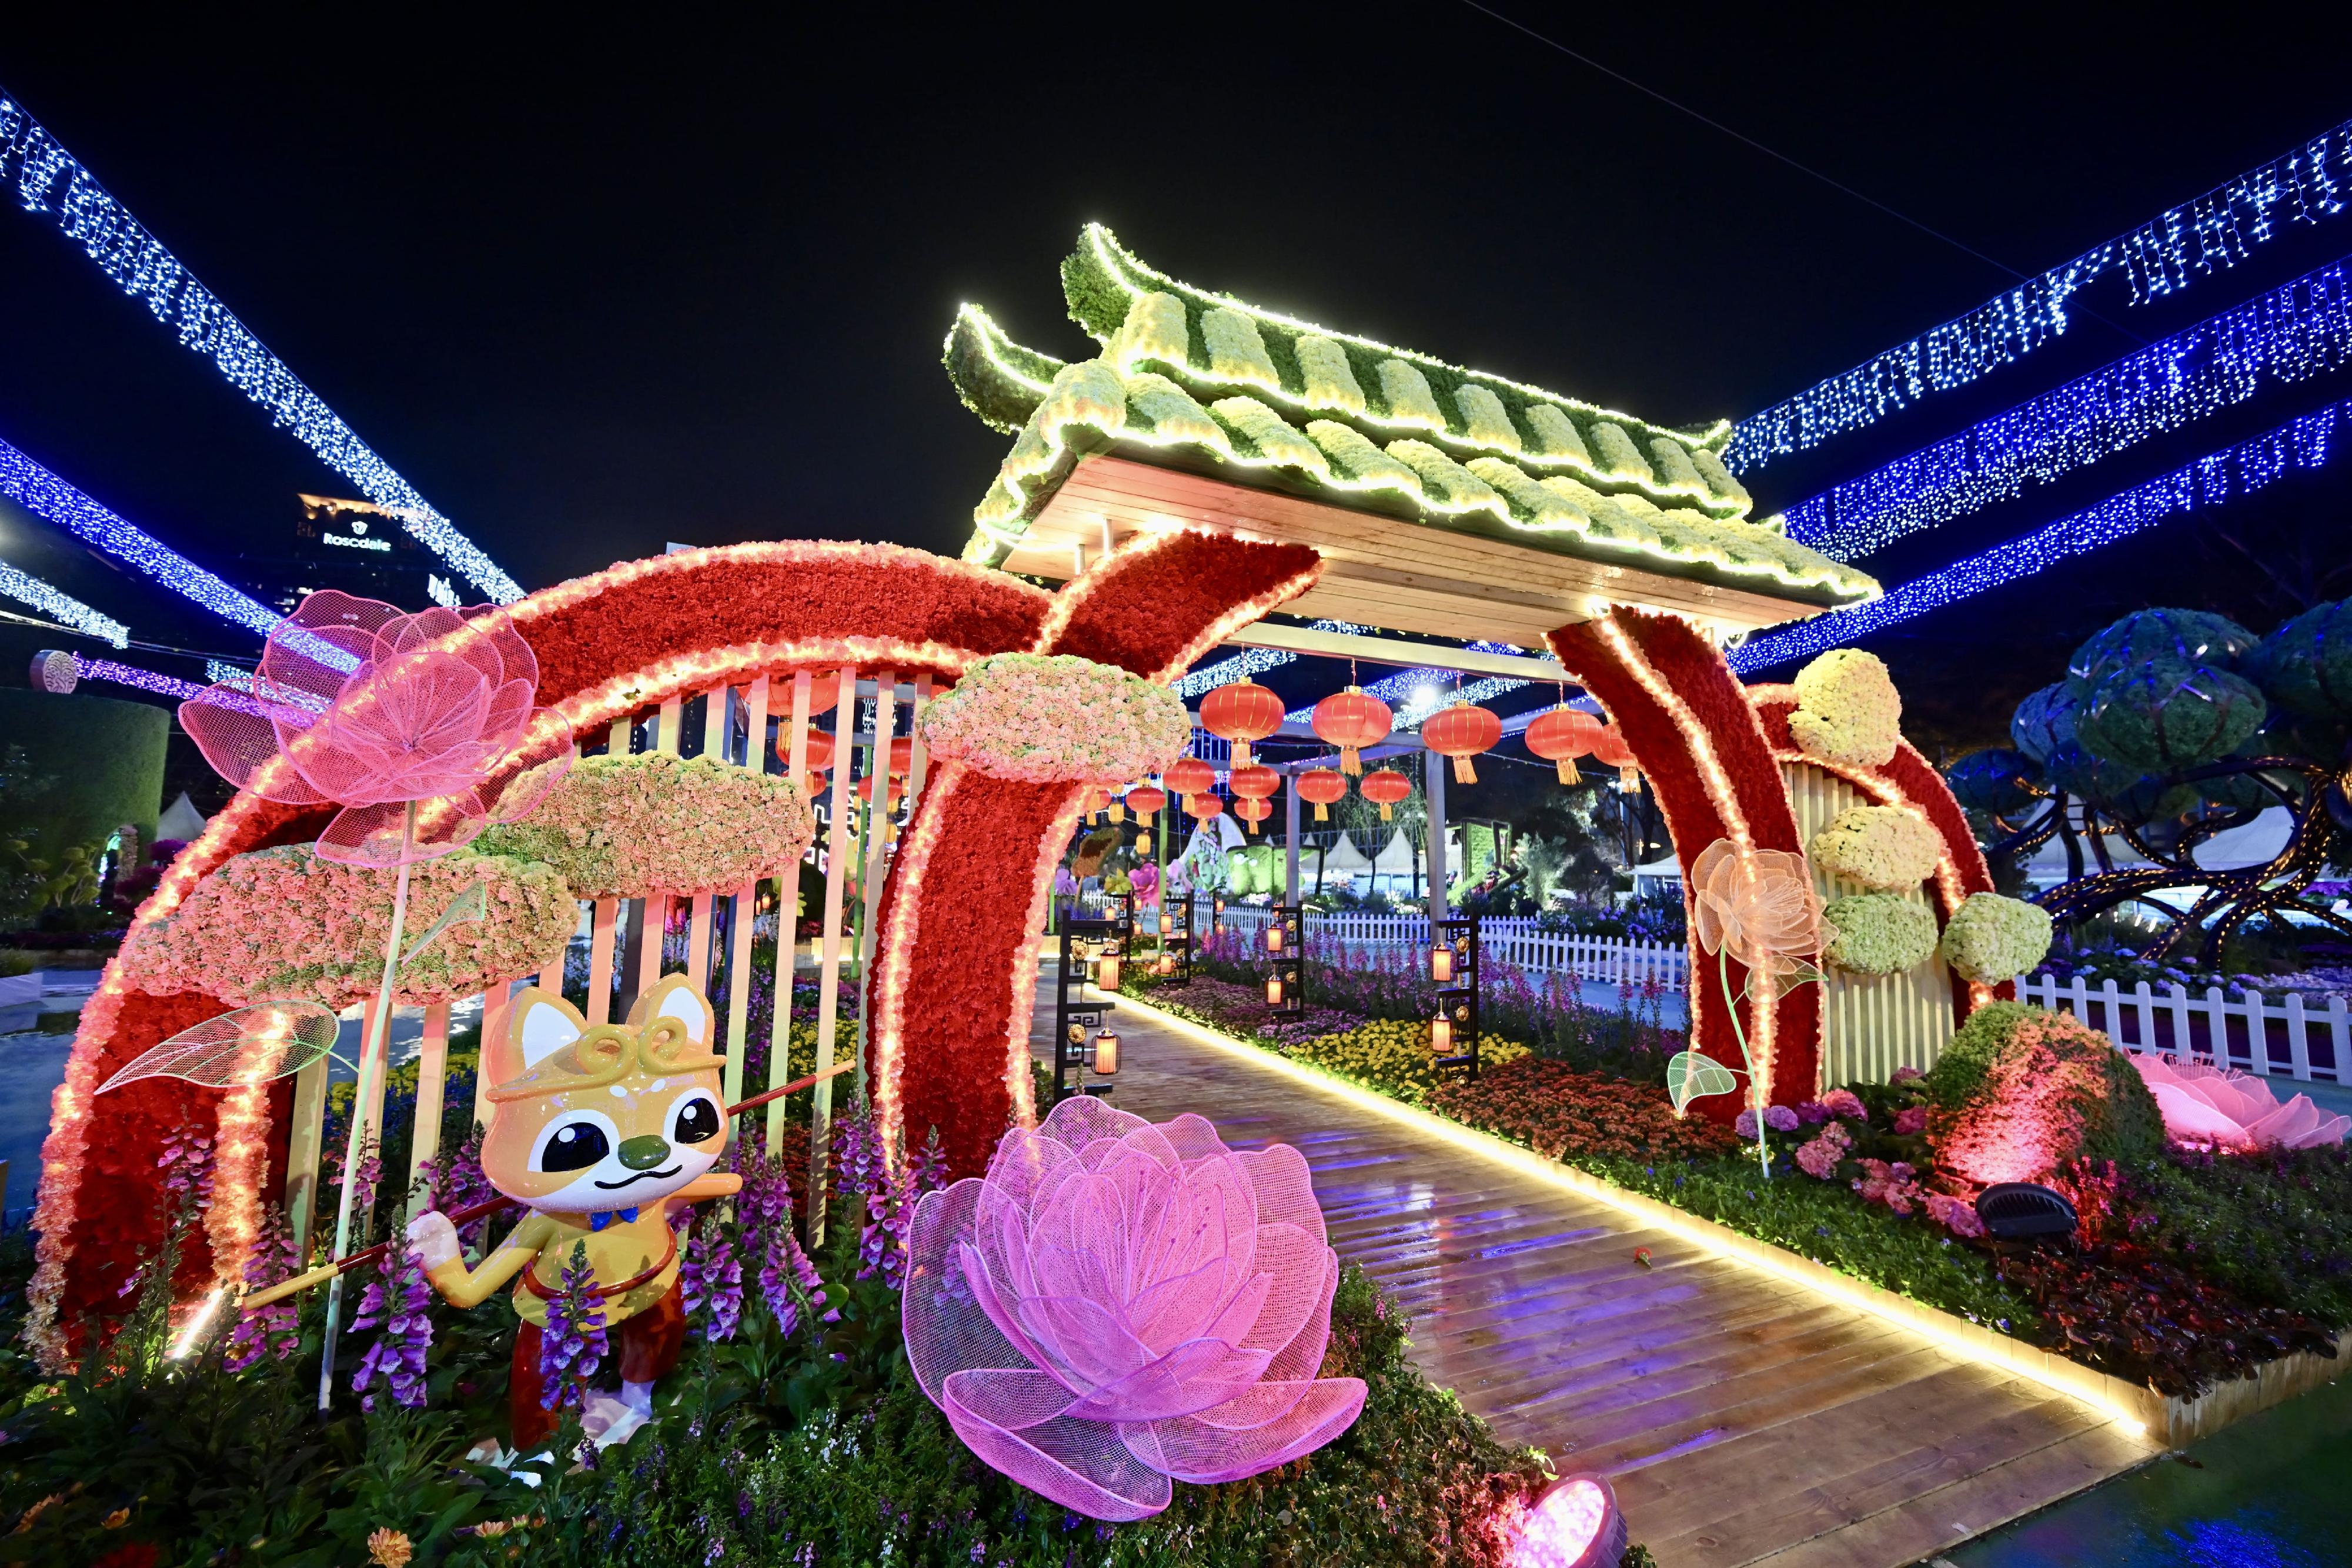 二○二四年香港花卉展览（花展）明日（三月十五日）至三月二十四日在维多利亚公园举行。今年花展的主题花是香彩雀，以「雀跃全城」为主题。晚上各个大型园林造景均加入灯光效果，让游人享受到不同的视觉体验。图示以《西游记》为主题的园林造景。